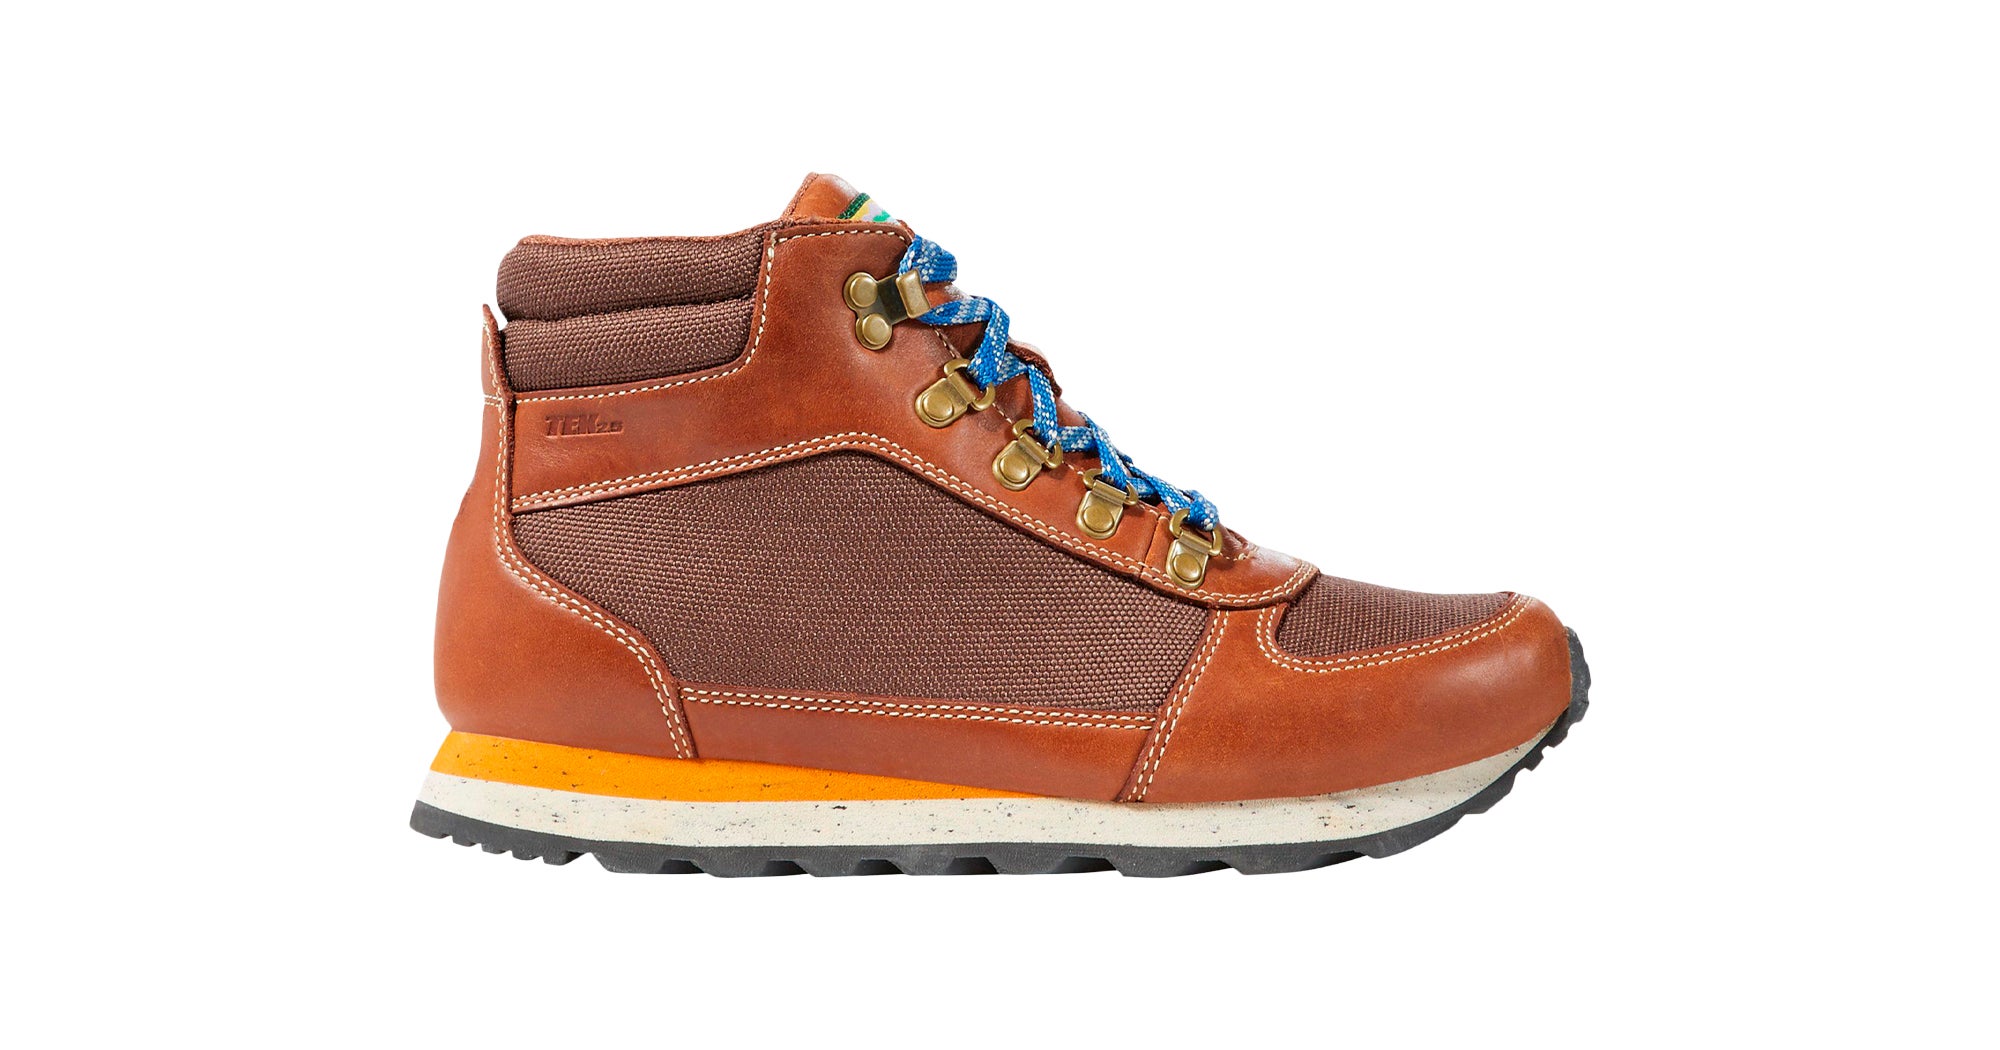 stylish hiking shoe